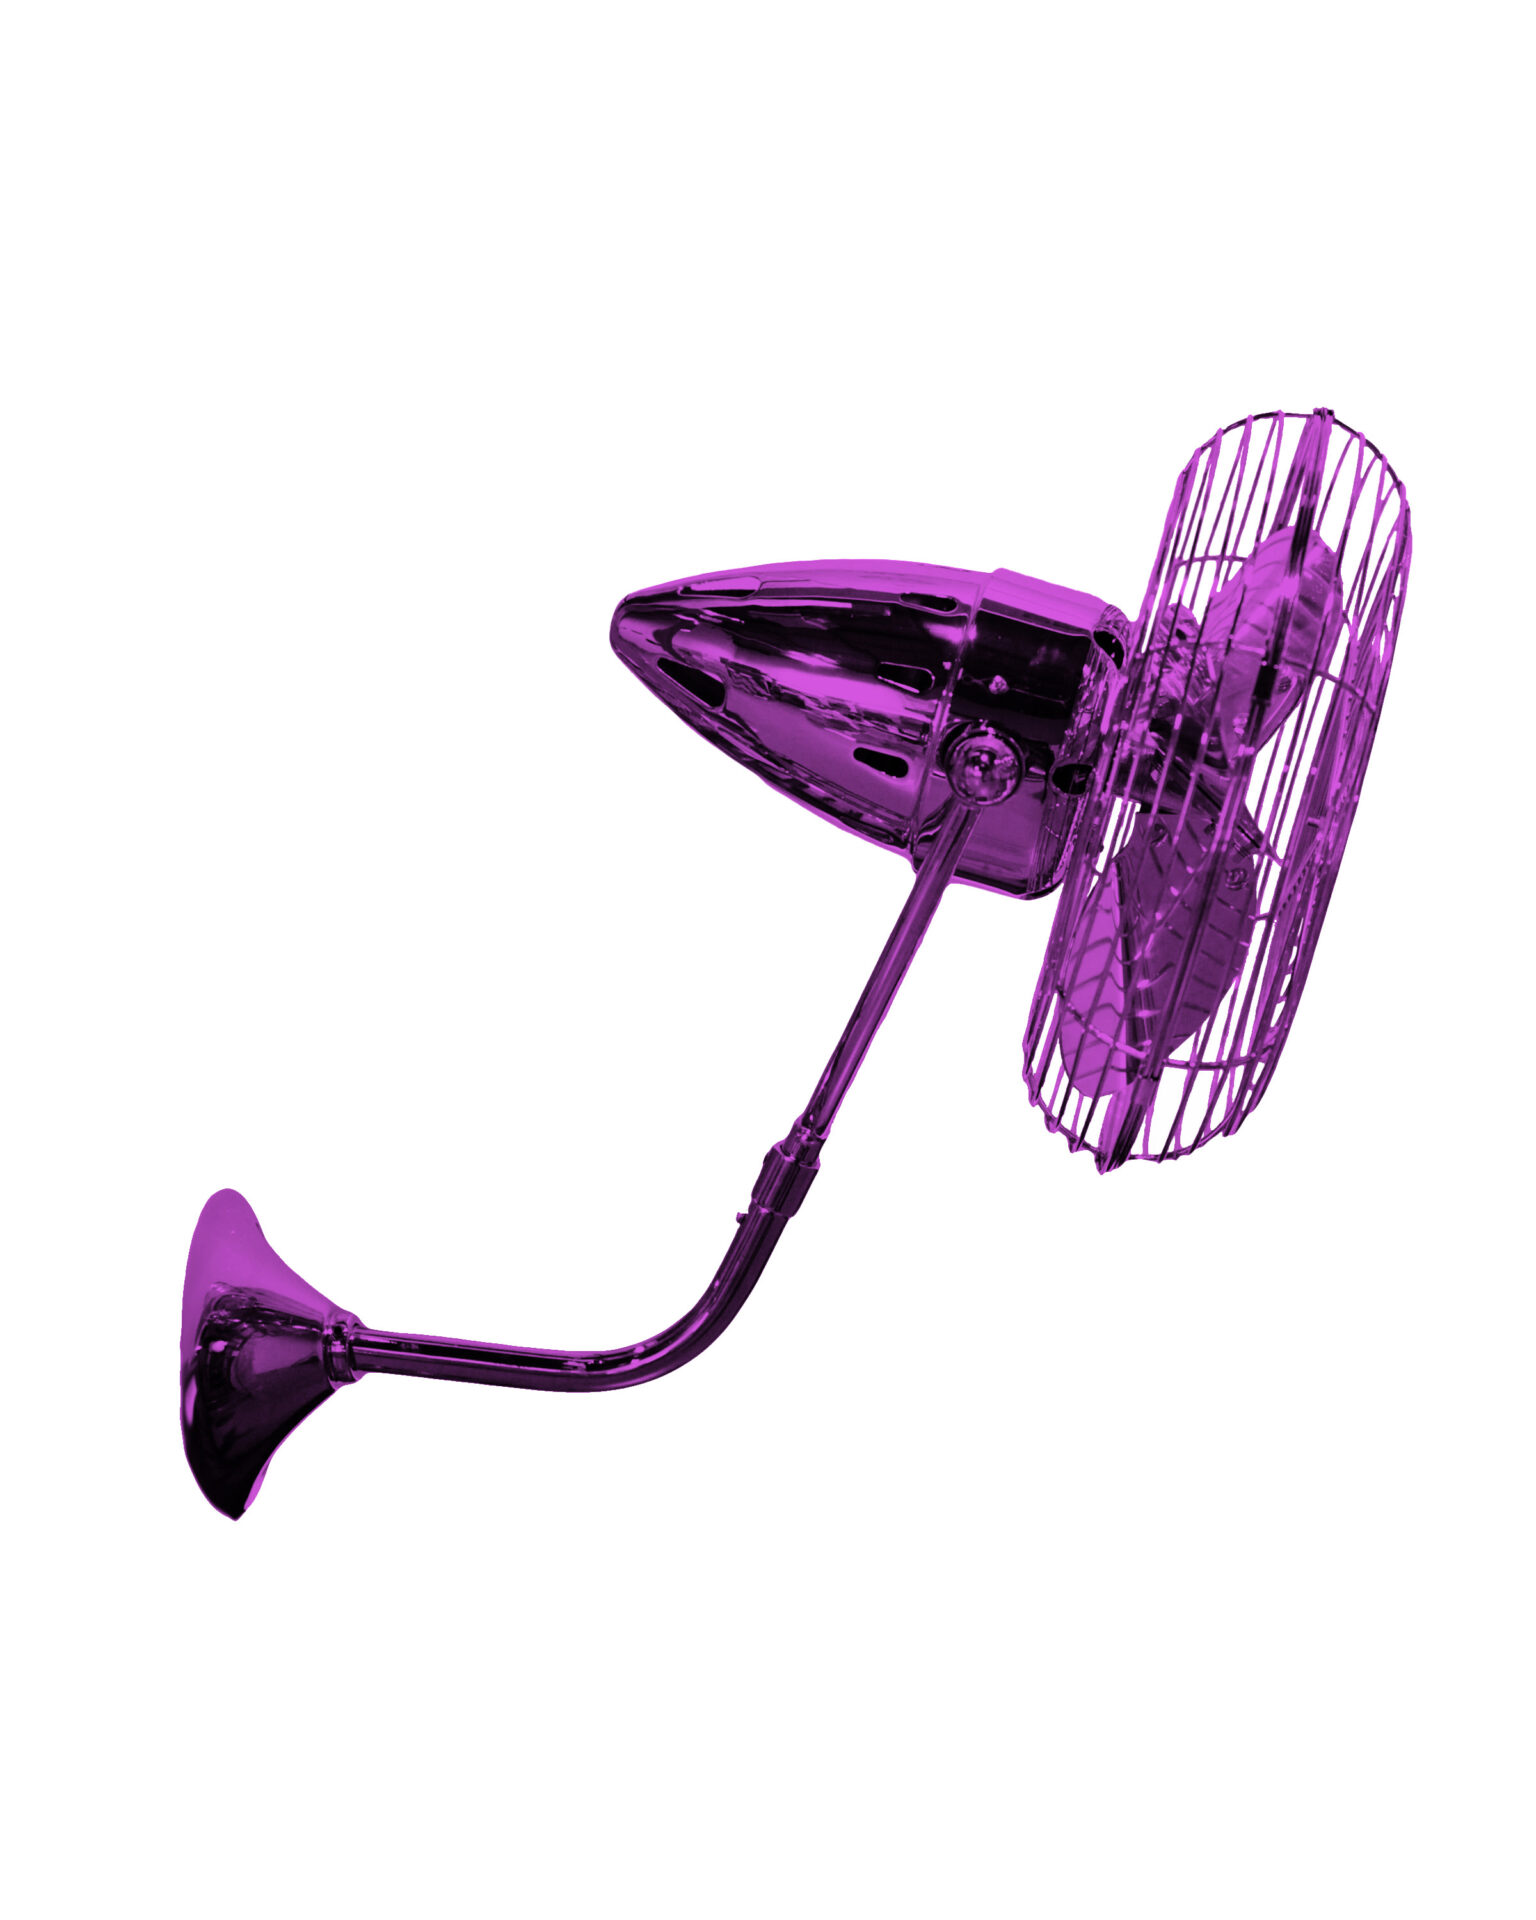 Bruna Parede Wall Fan in Ametista / Light Purple Finish Made by Matthews Fan Company